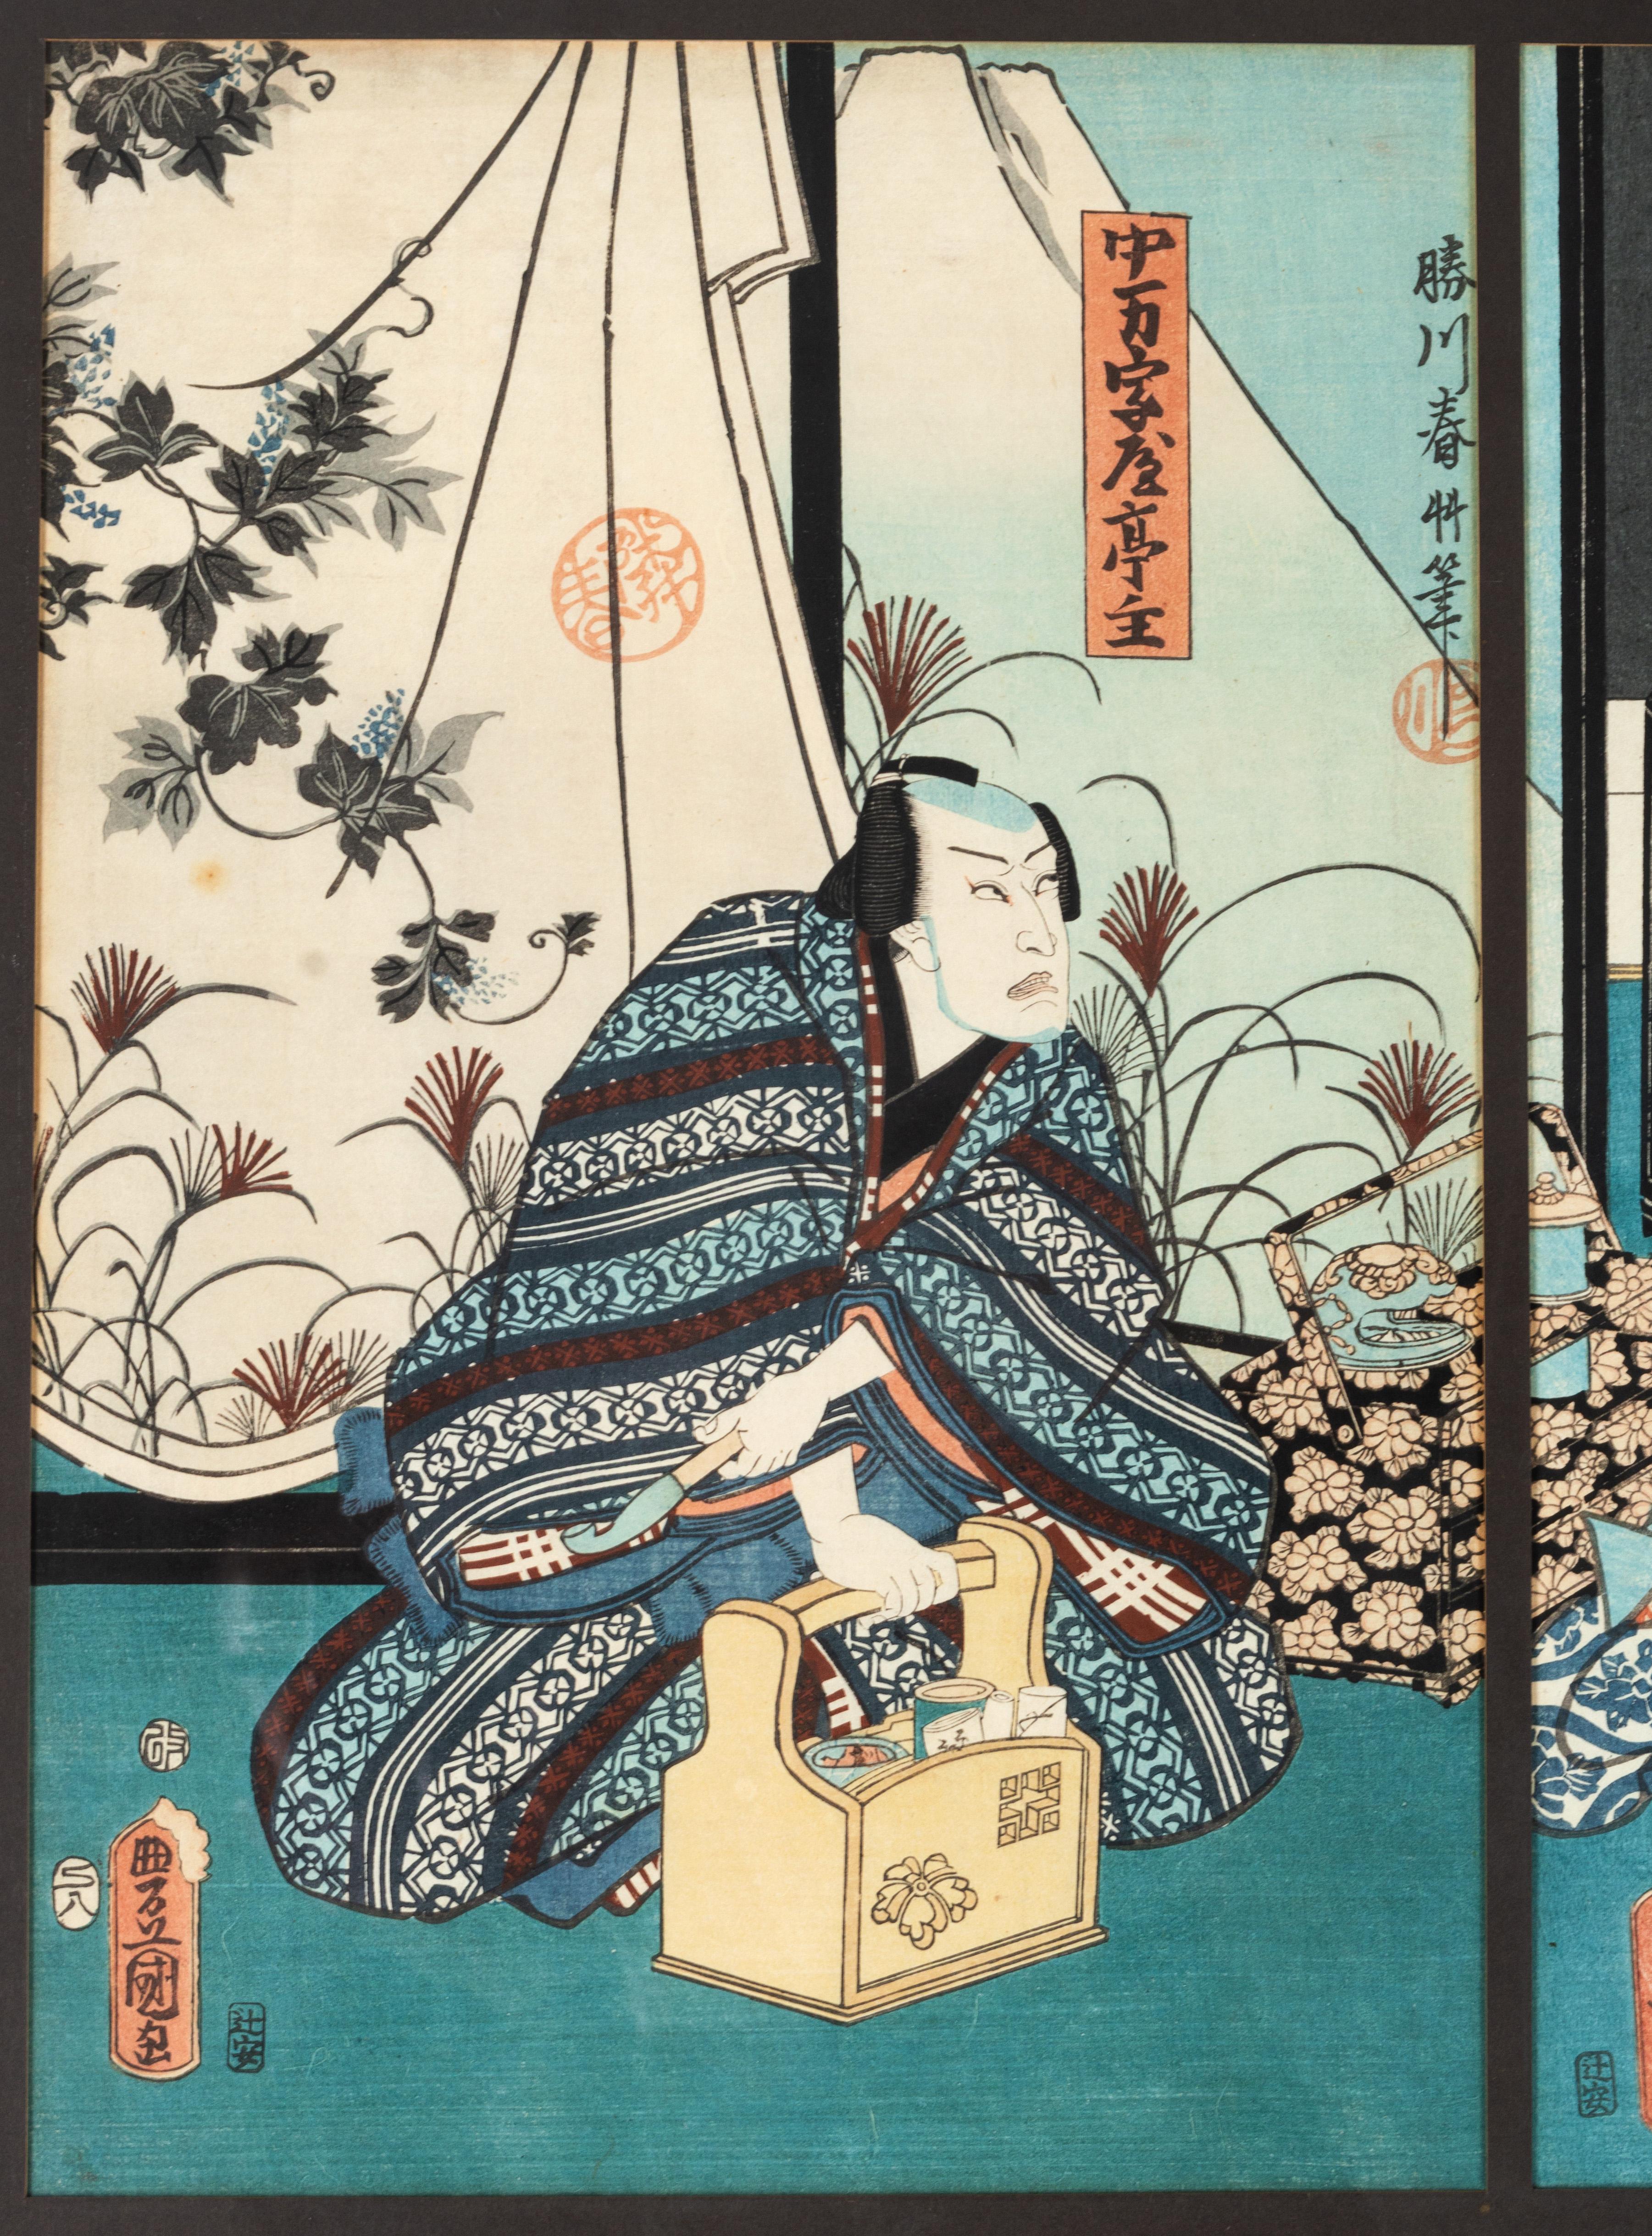 Gerahmtes japanisches Diptychon mit Holzschnitt-Druck, Toyokuni II, 19. Jahrhundert 

Toyokuni II (1786-1864)
